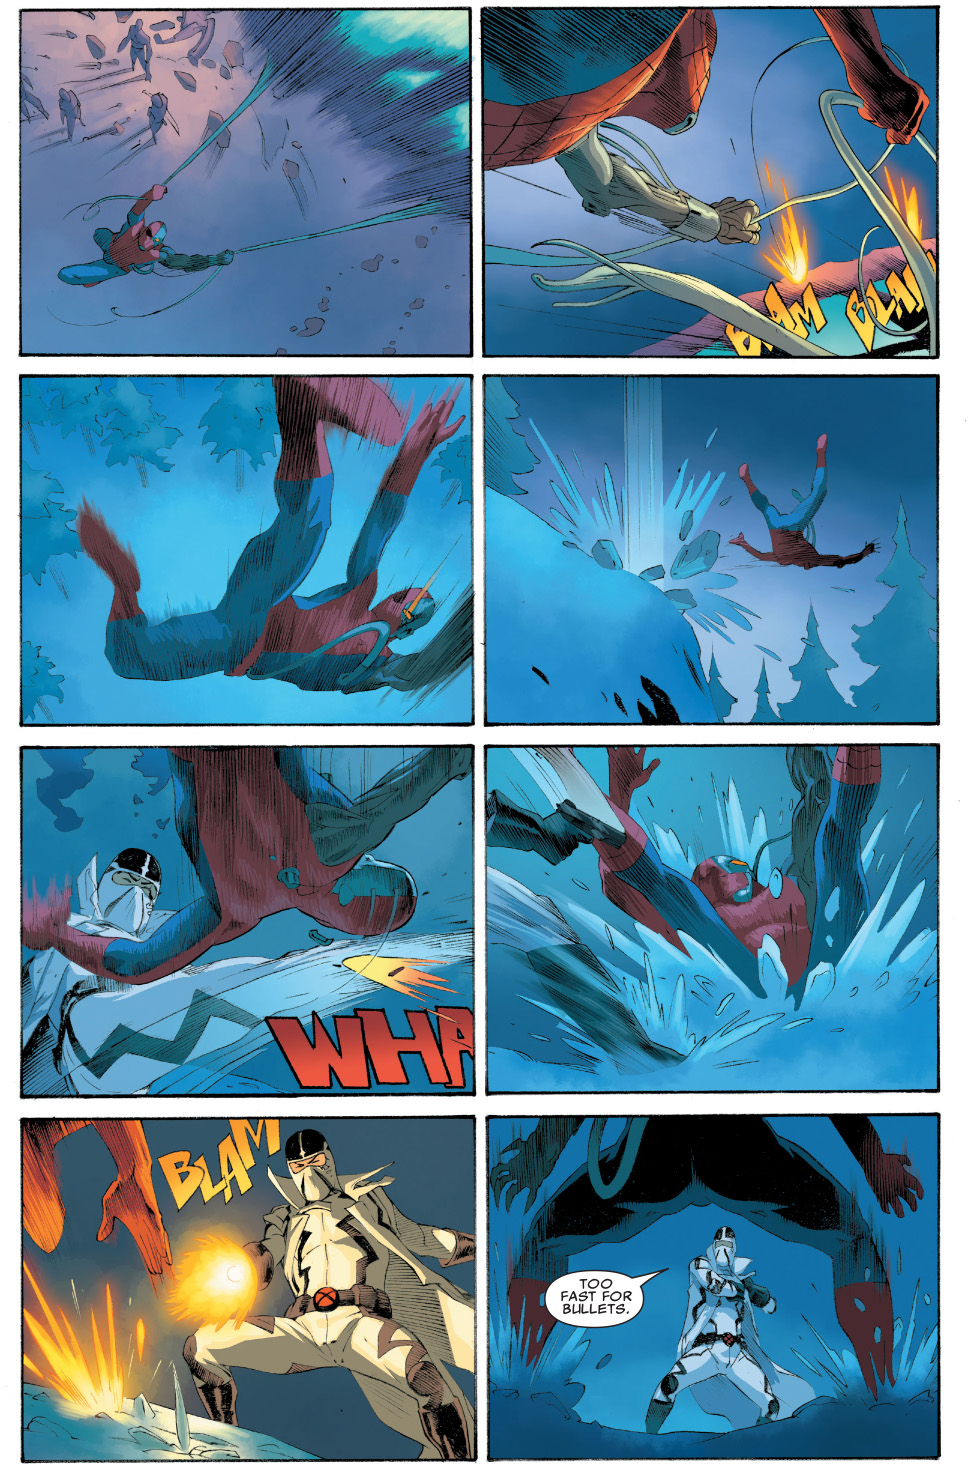 fantomex vs spider-man deathlok